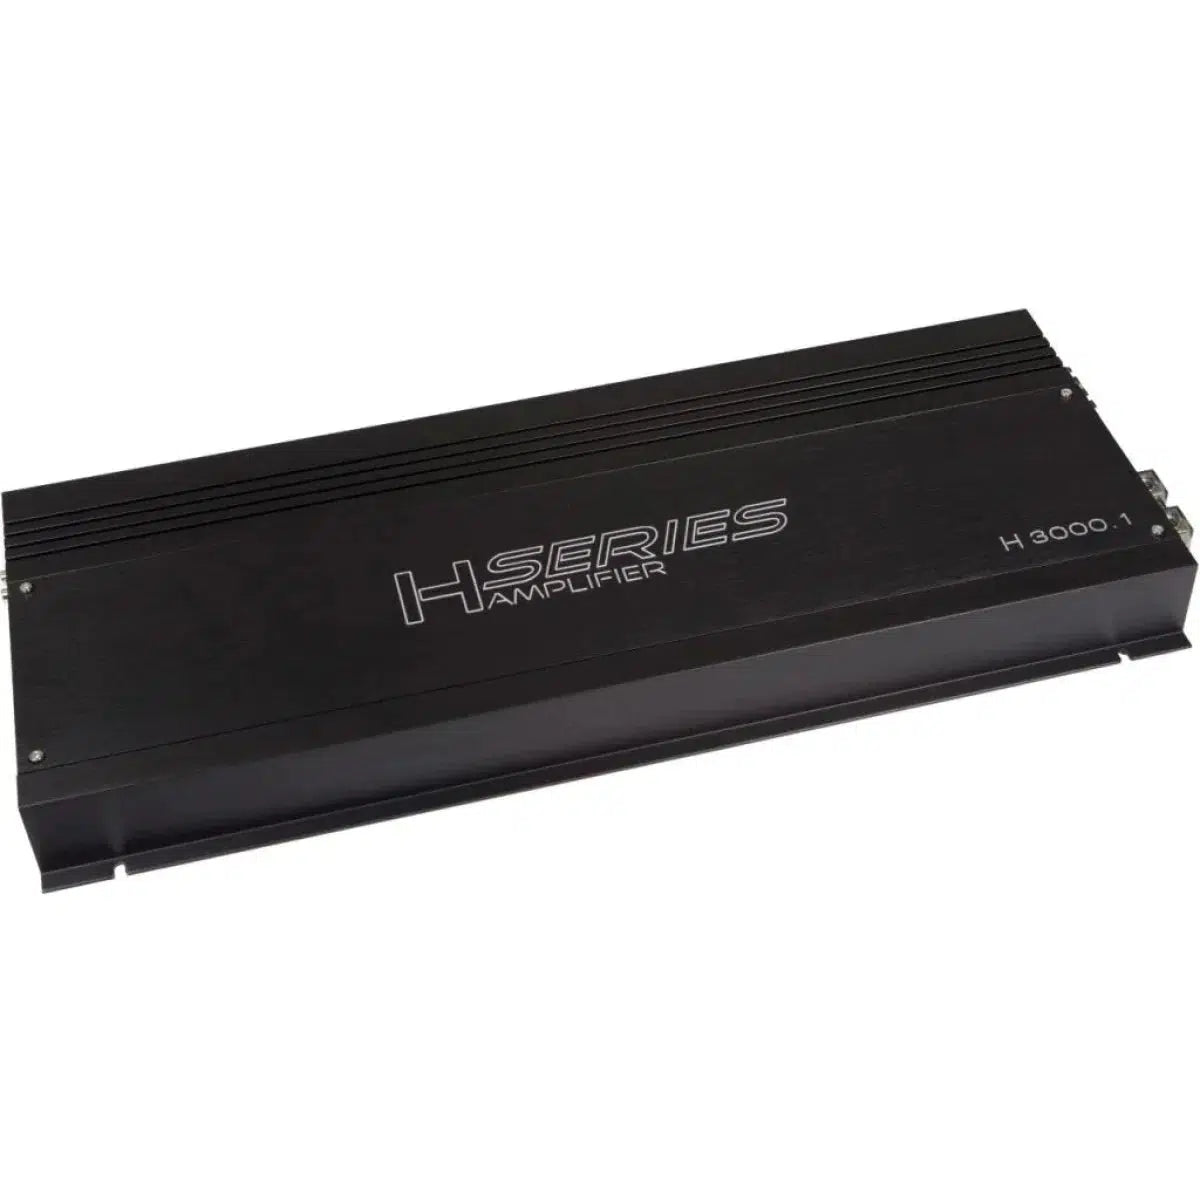 Audio System-Helon H-3000.1 D-1 channel amplifier-Masori.de